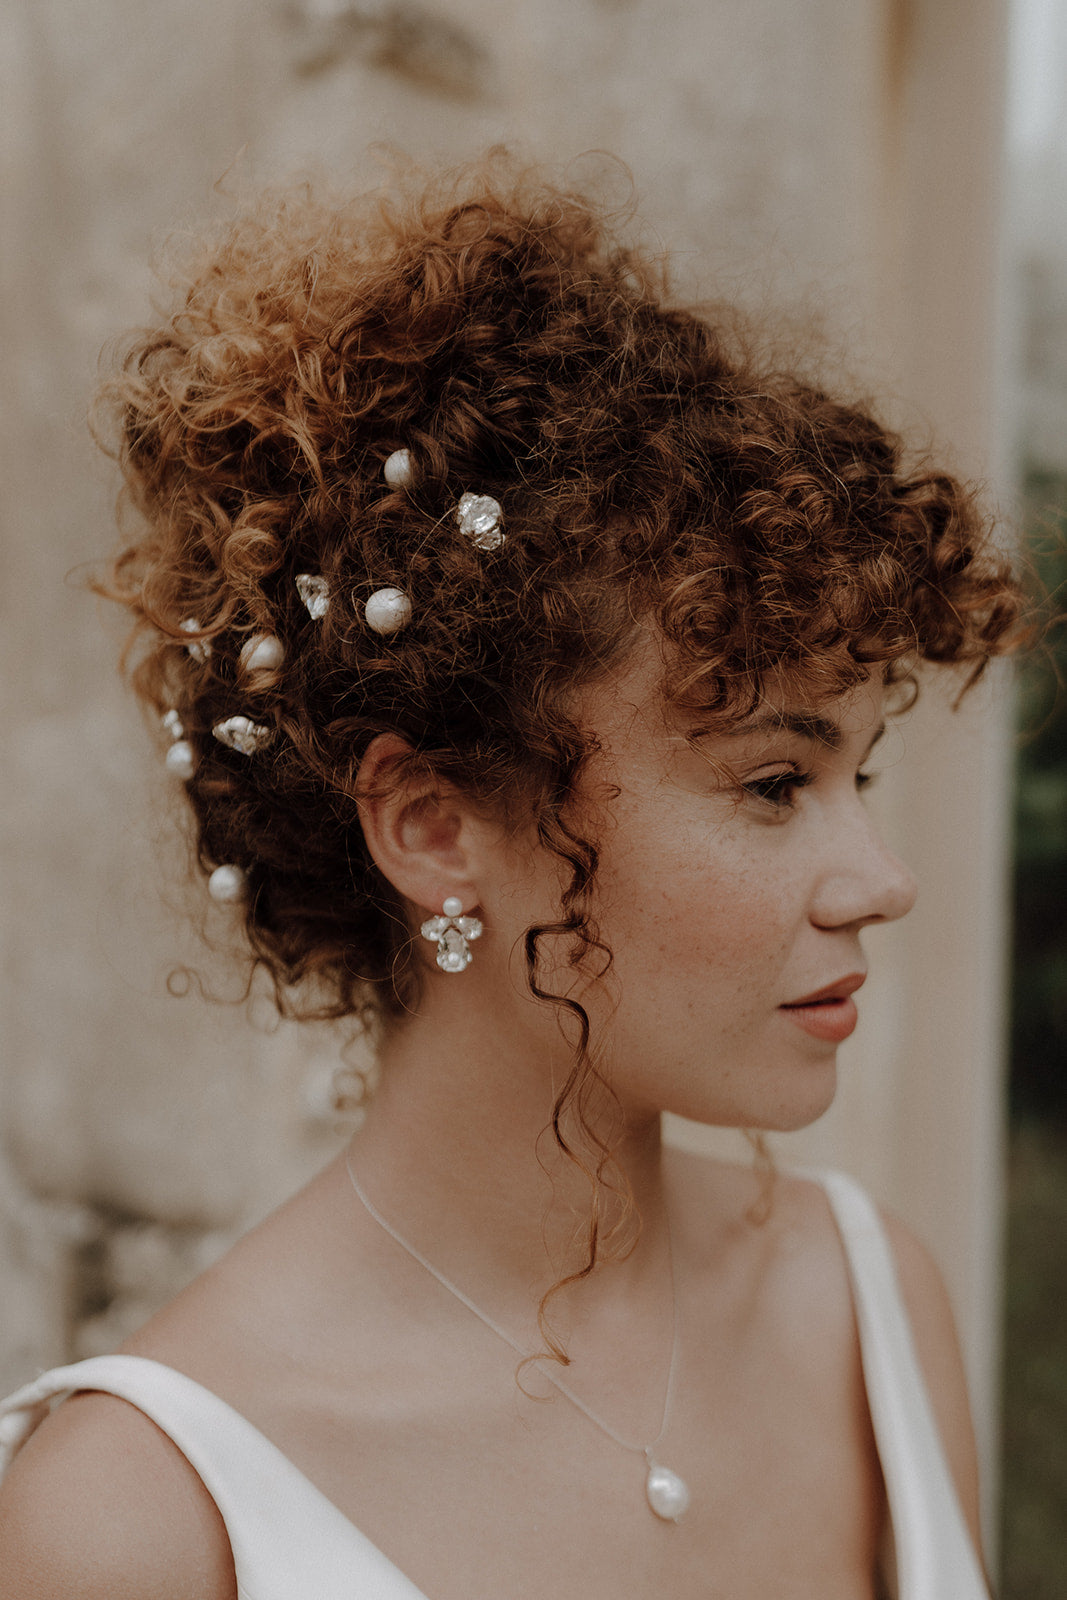 Beatrice Crystal Earrings